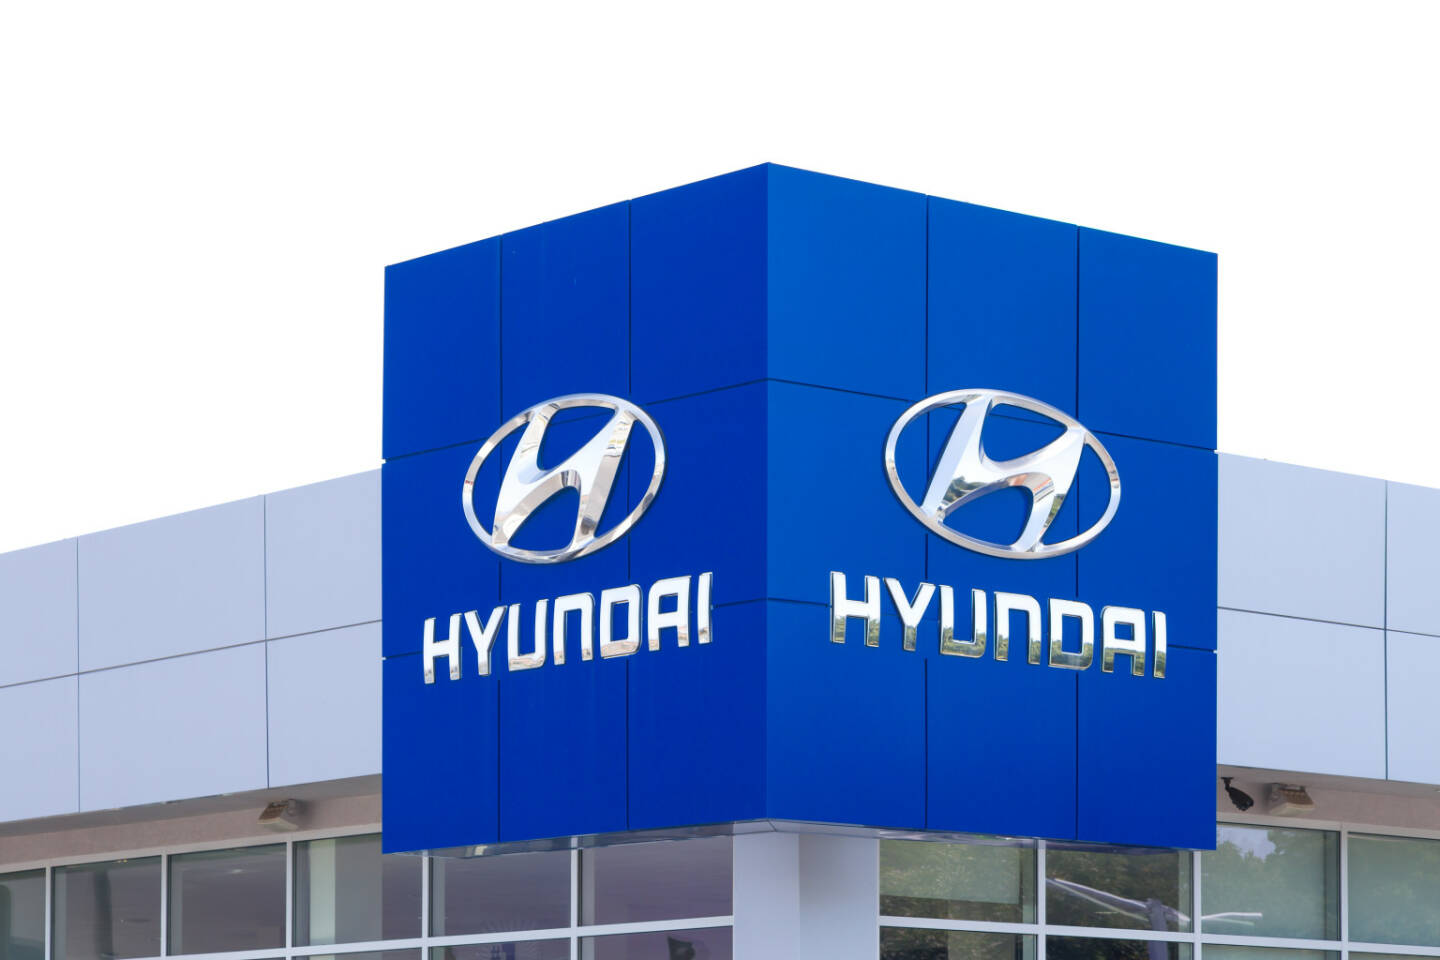 Hyundai, Logo <a href=http://www.shutterstock.com/gallery-931246p1.html?cr=00&pl=edit-00>Ken Wolter</a> / <a href=http://www.shutterstock.com/editorial?cr=00&pl=edit-00>Shutterstock.com</a>